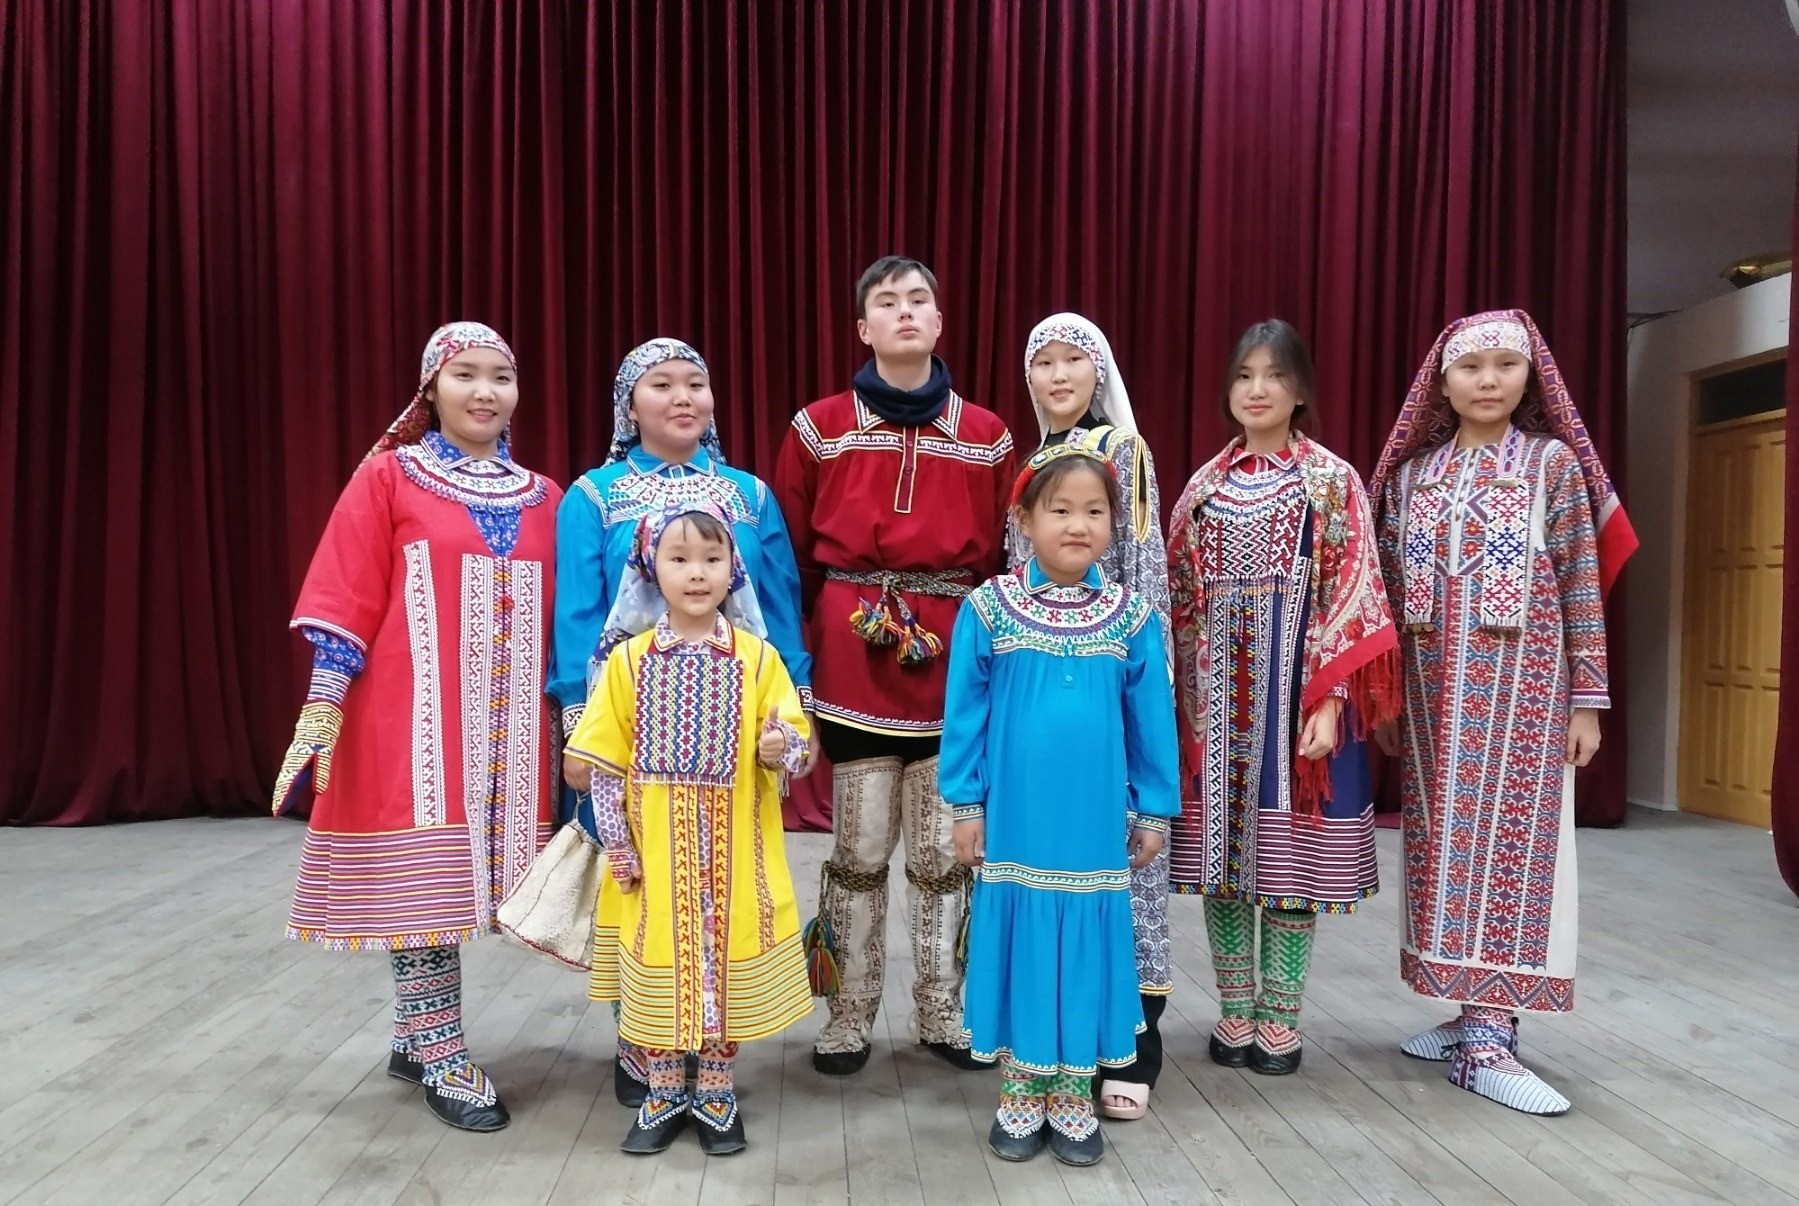 Югорская коллекция костюмов «Сила традиций» стала одной из лучших на международном конкурсе